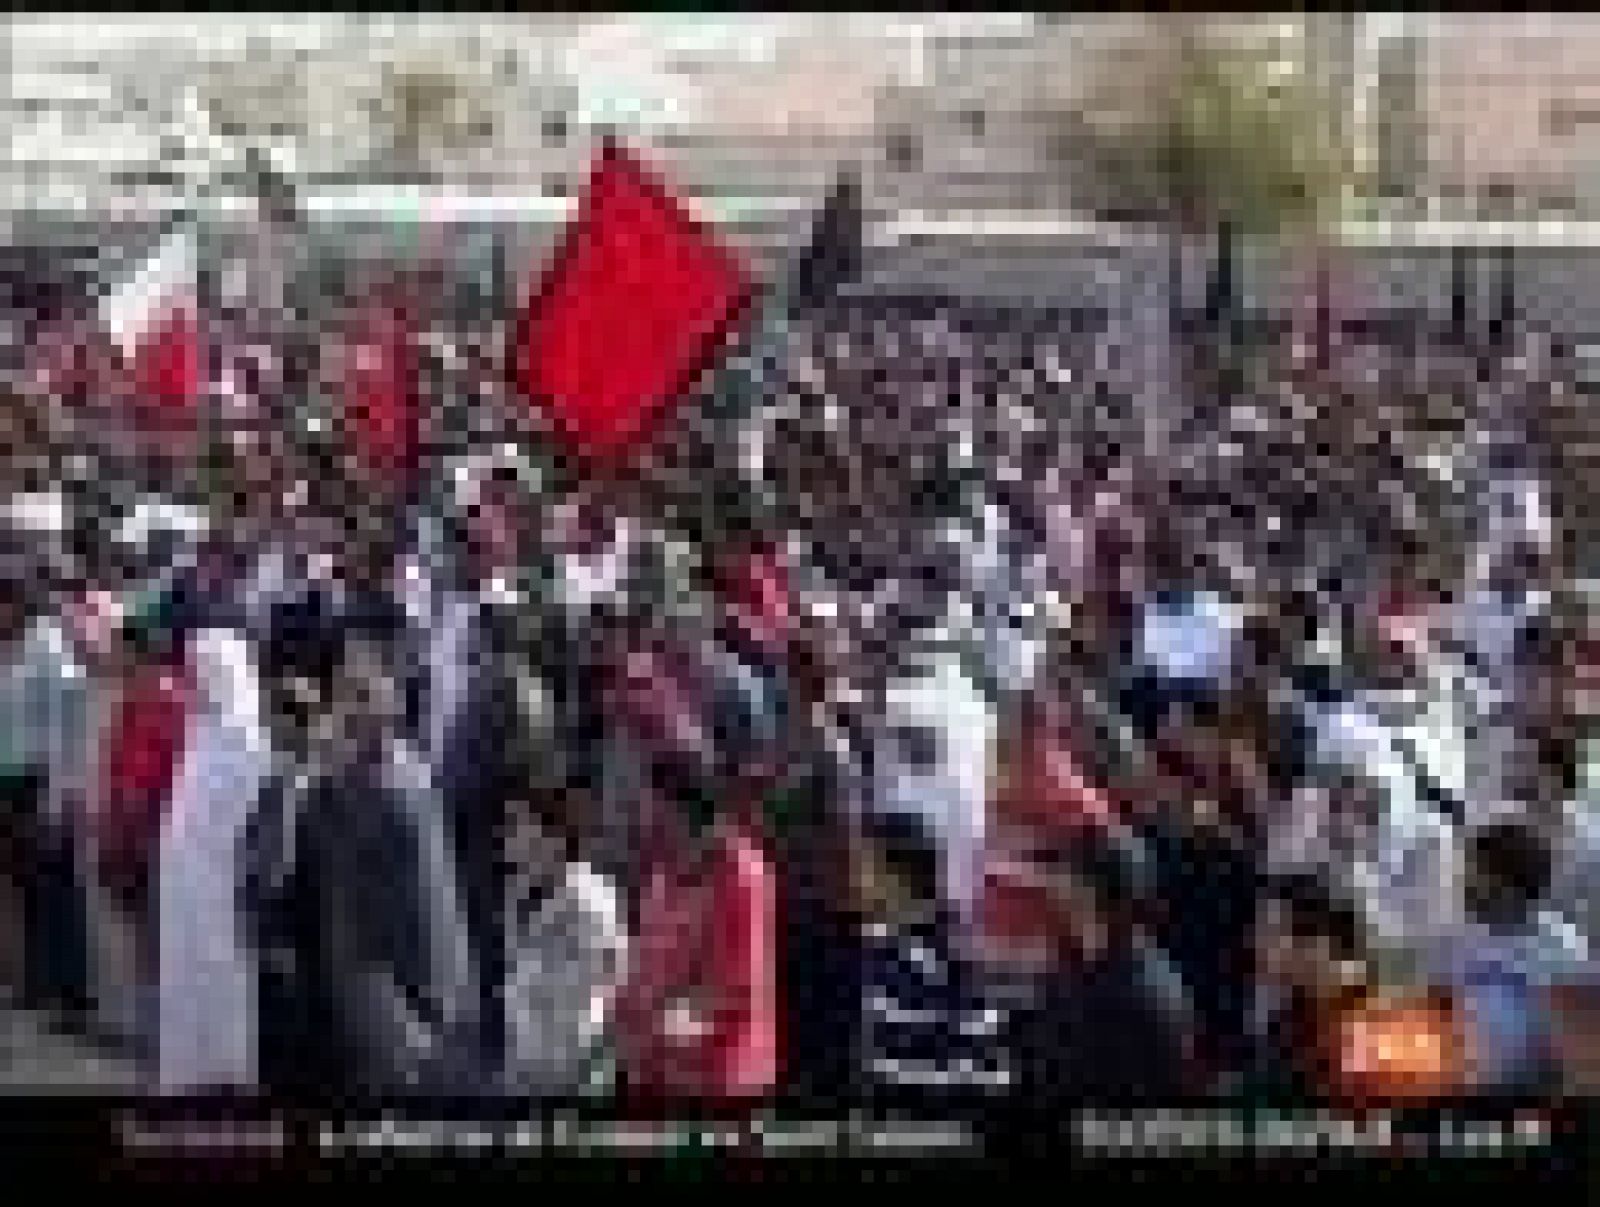  Partidarios del Gobierno se manifiestan en Bahréin con fotos del rey